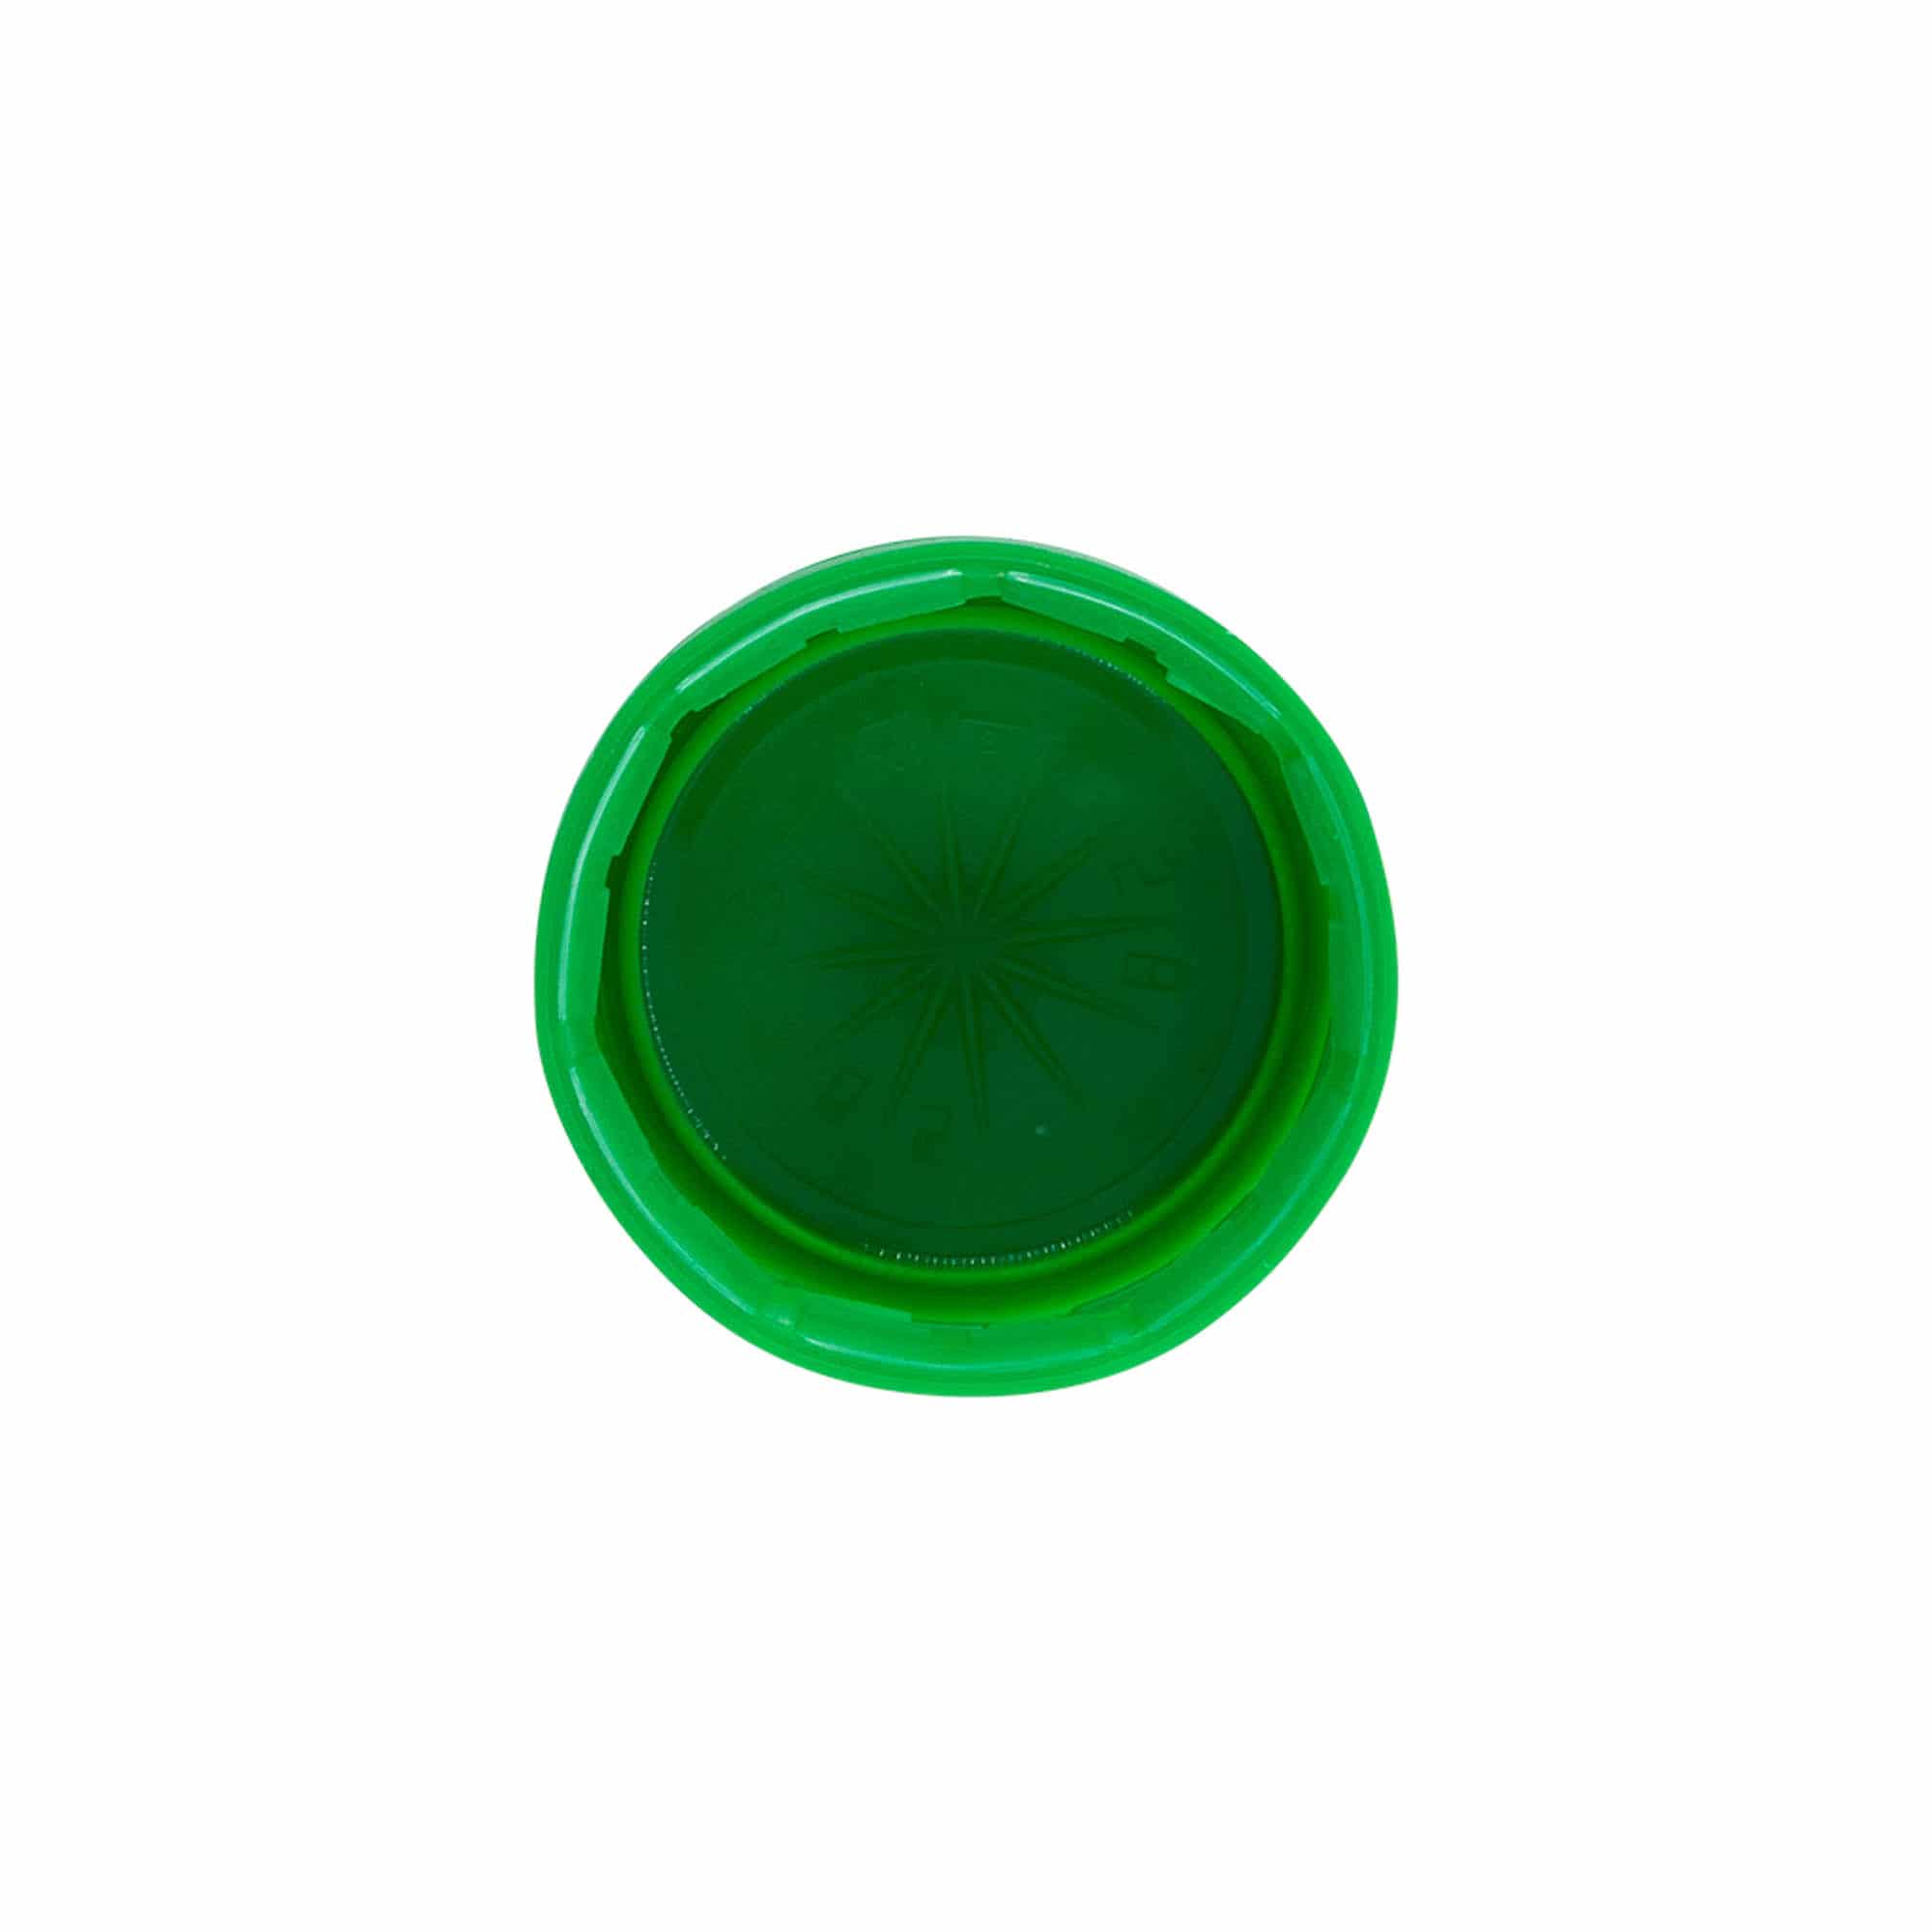 Šroubovací uzávěr s dvoucestným závitem, plast PE, zelený, pro ústí: PET 38 mm